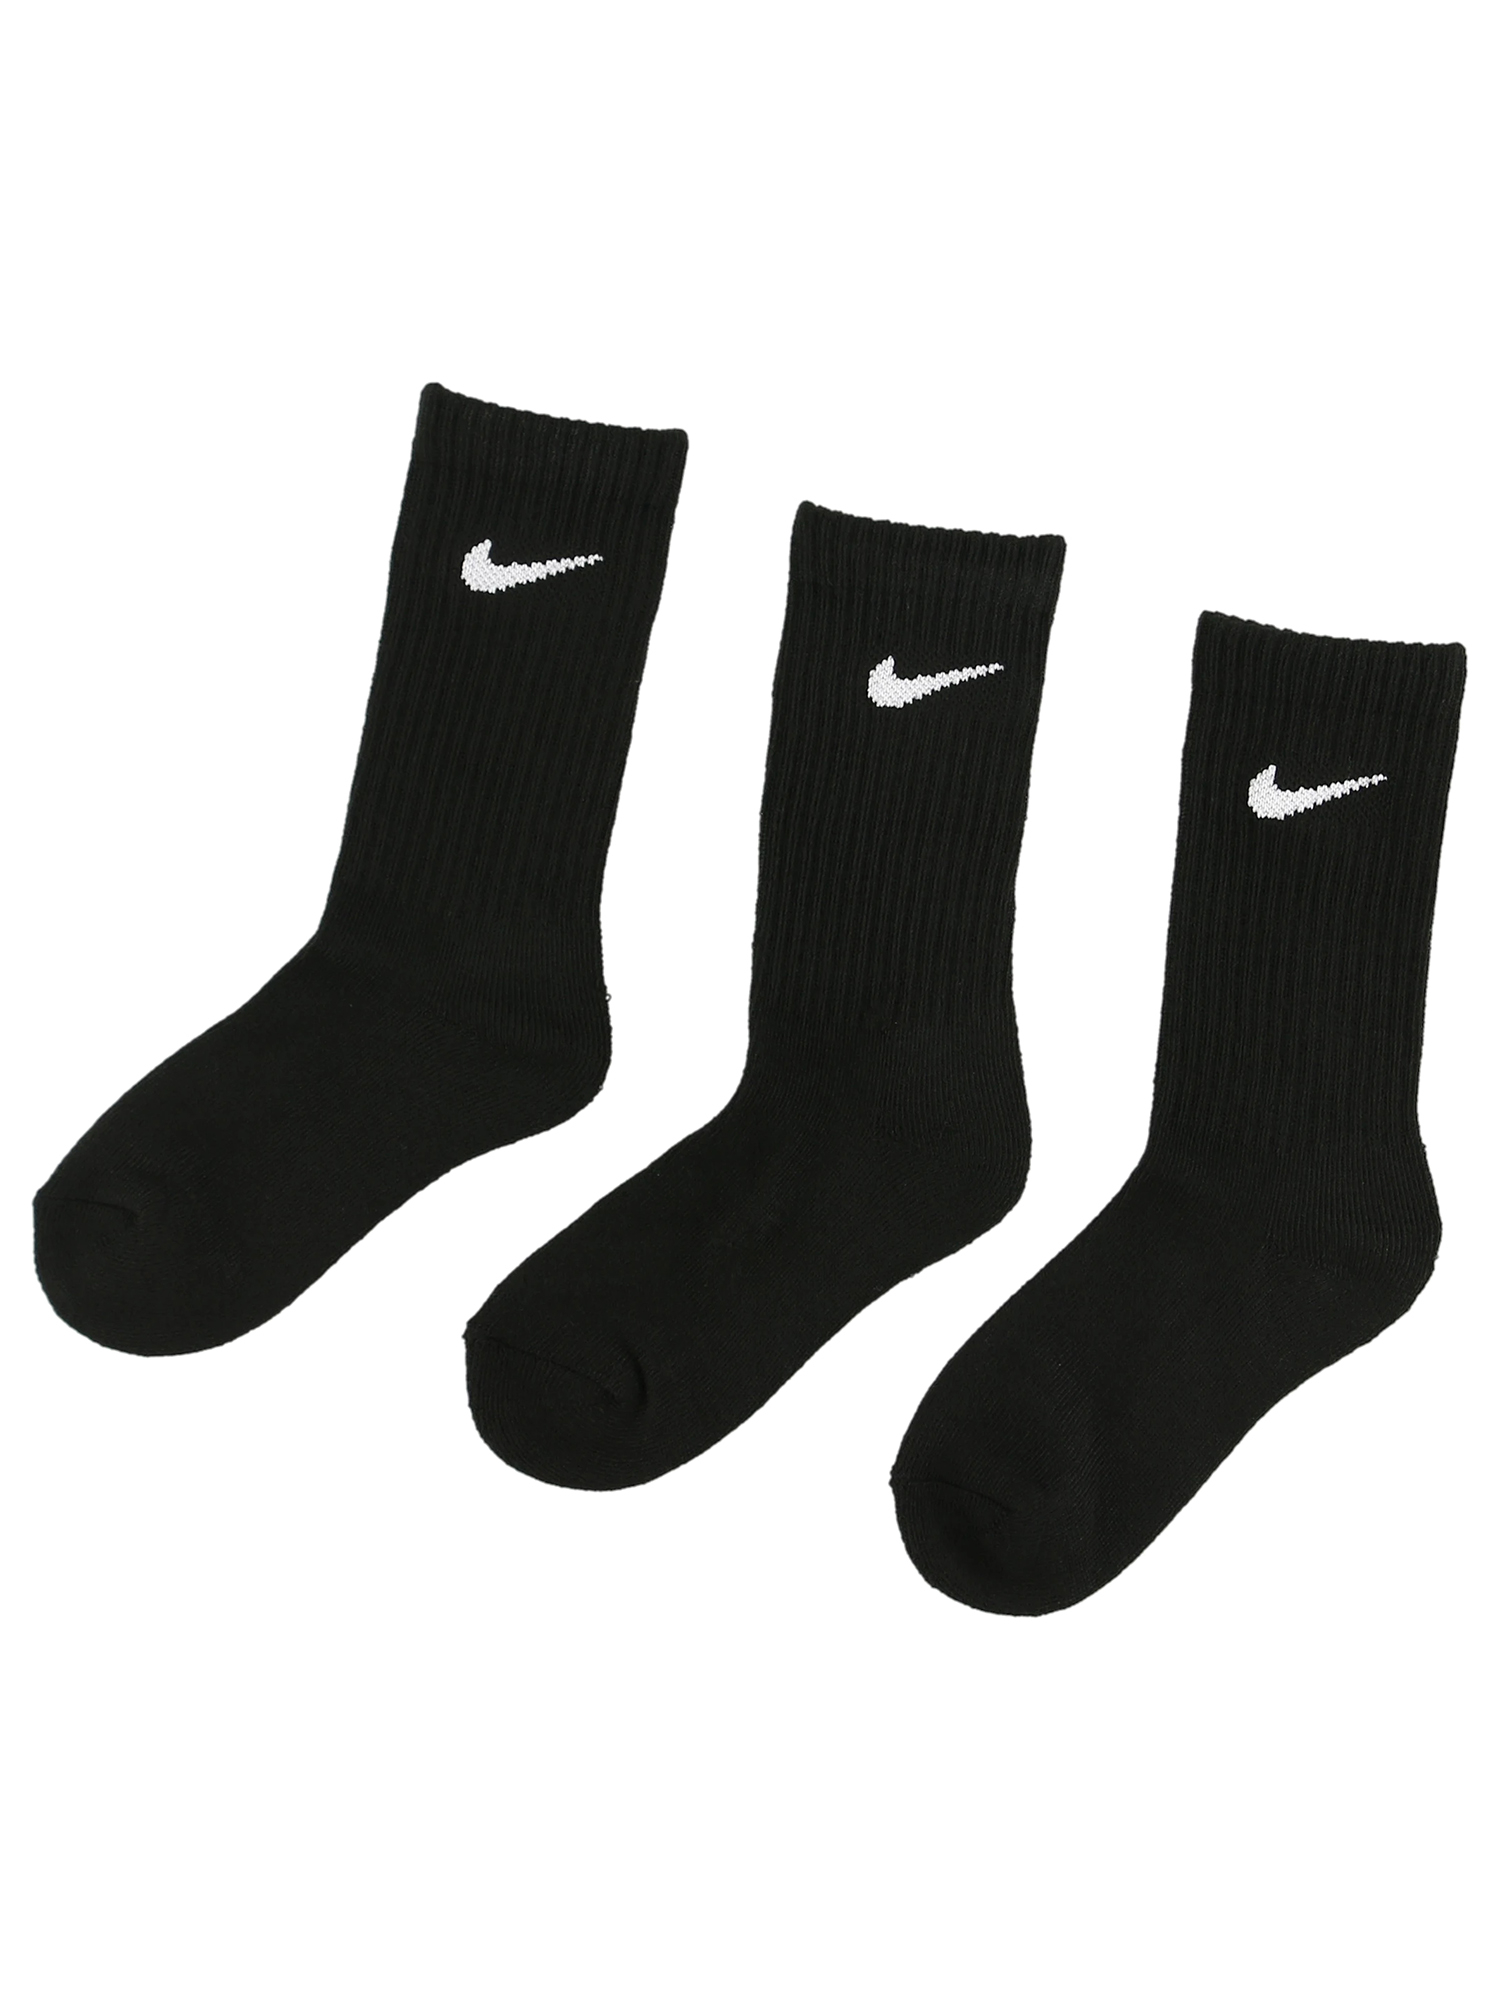 ソックス Nike Nike 品番 Fdrk Fdr Online Store エフディーアールオンラインストア のキッズファッション通販 Shoplist ショップリスト